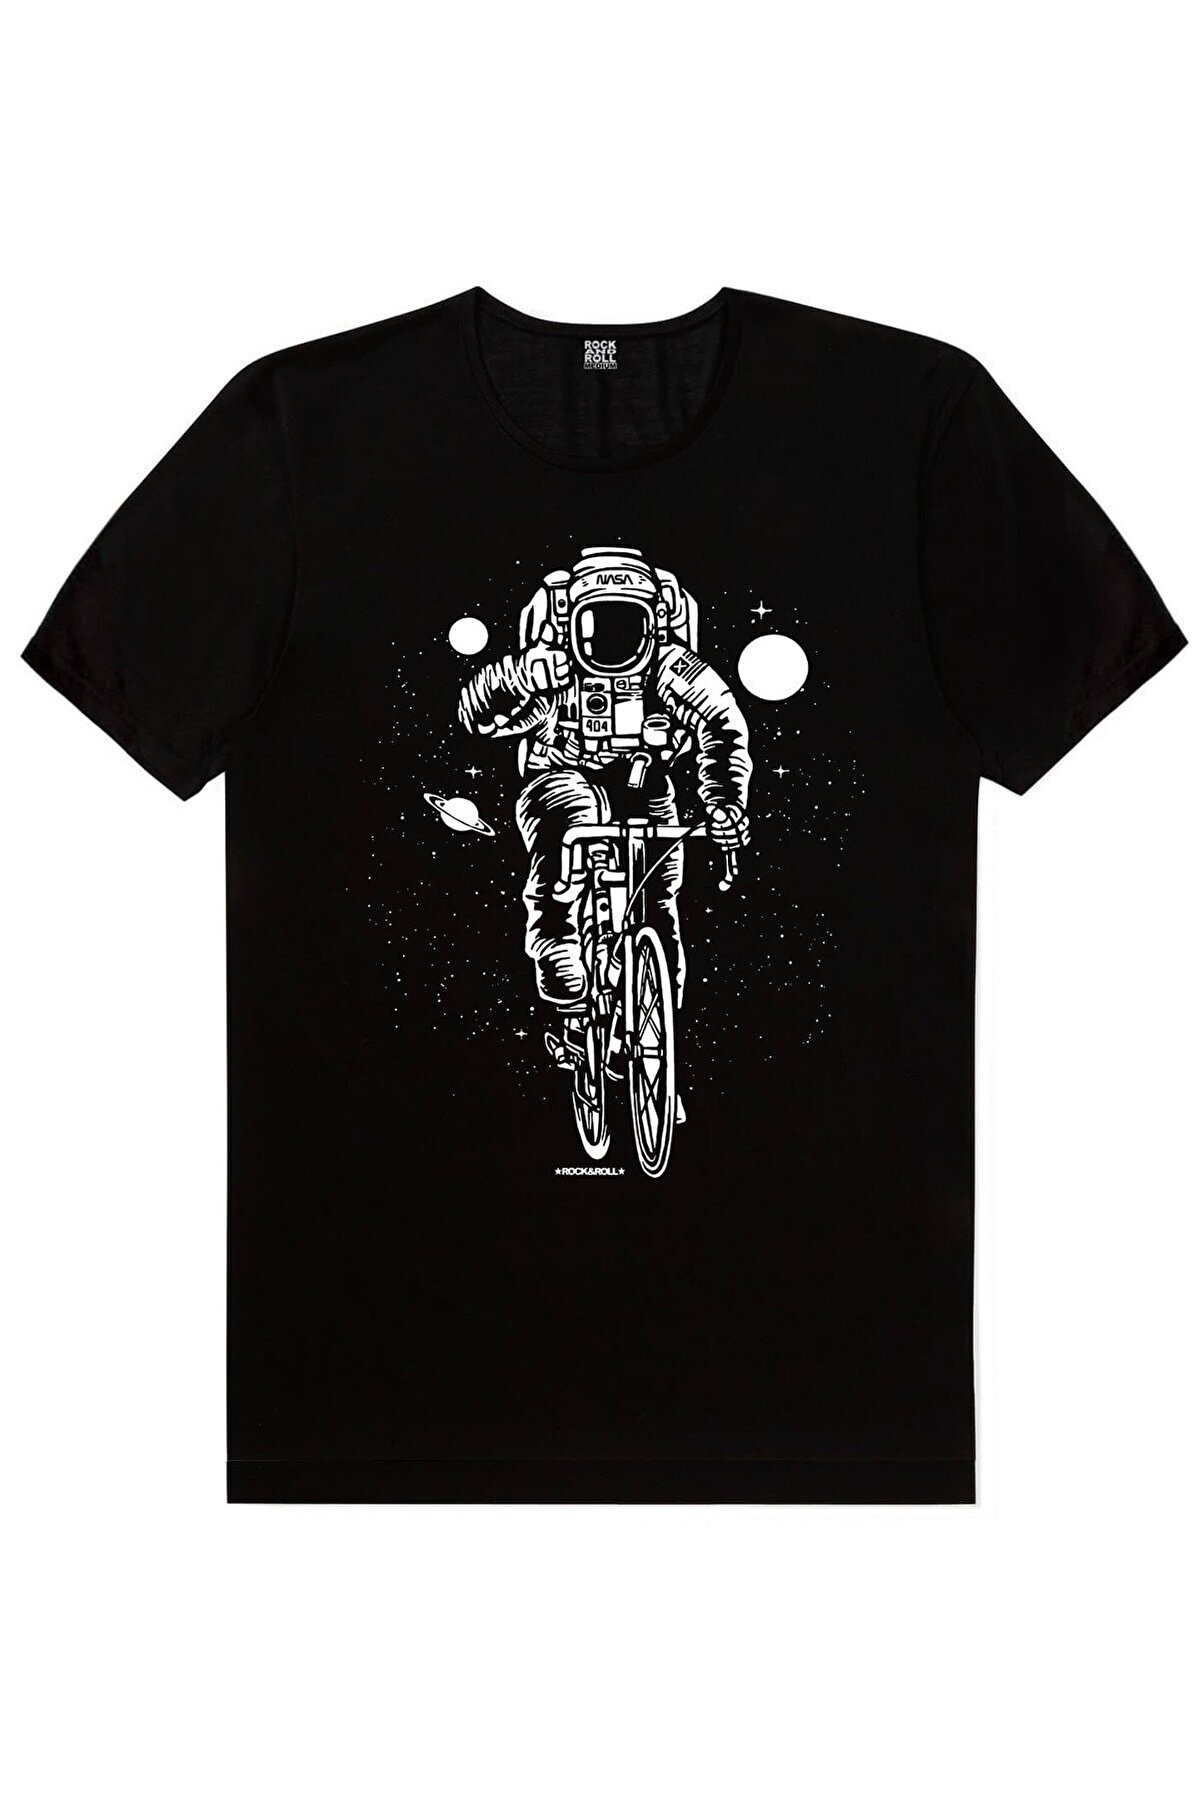 Bisikletli Astronot, Yarış Bisikleti Yazılar Beyaz Erkek 2'li Eko Paket T-shirt